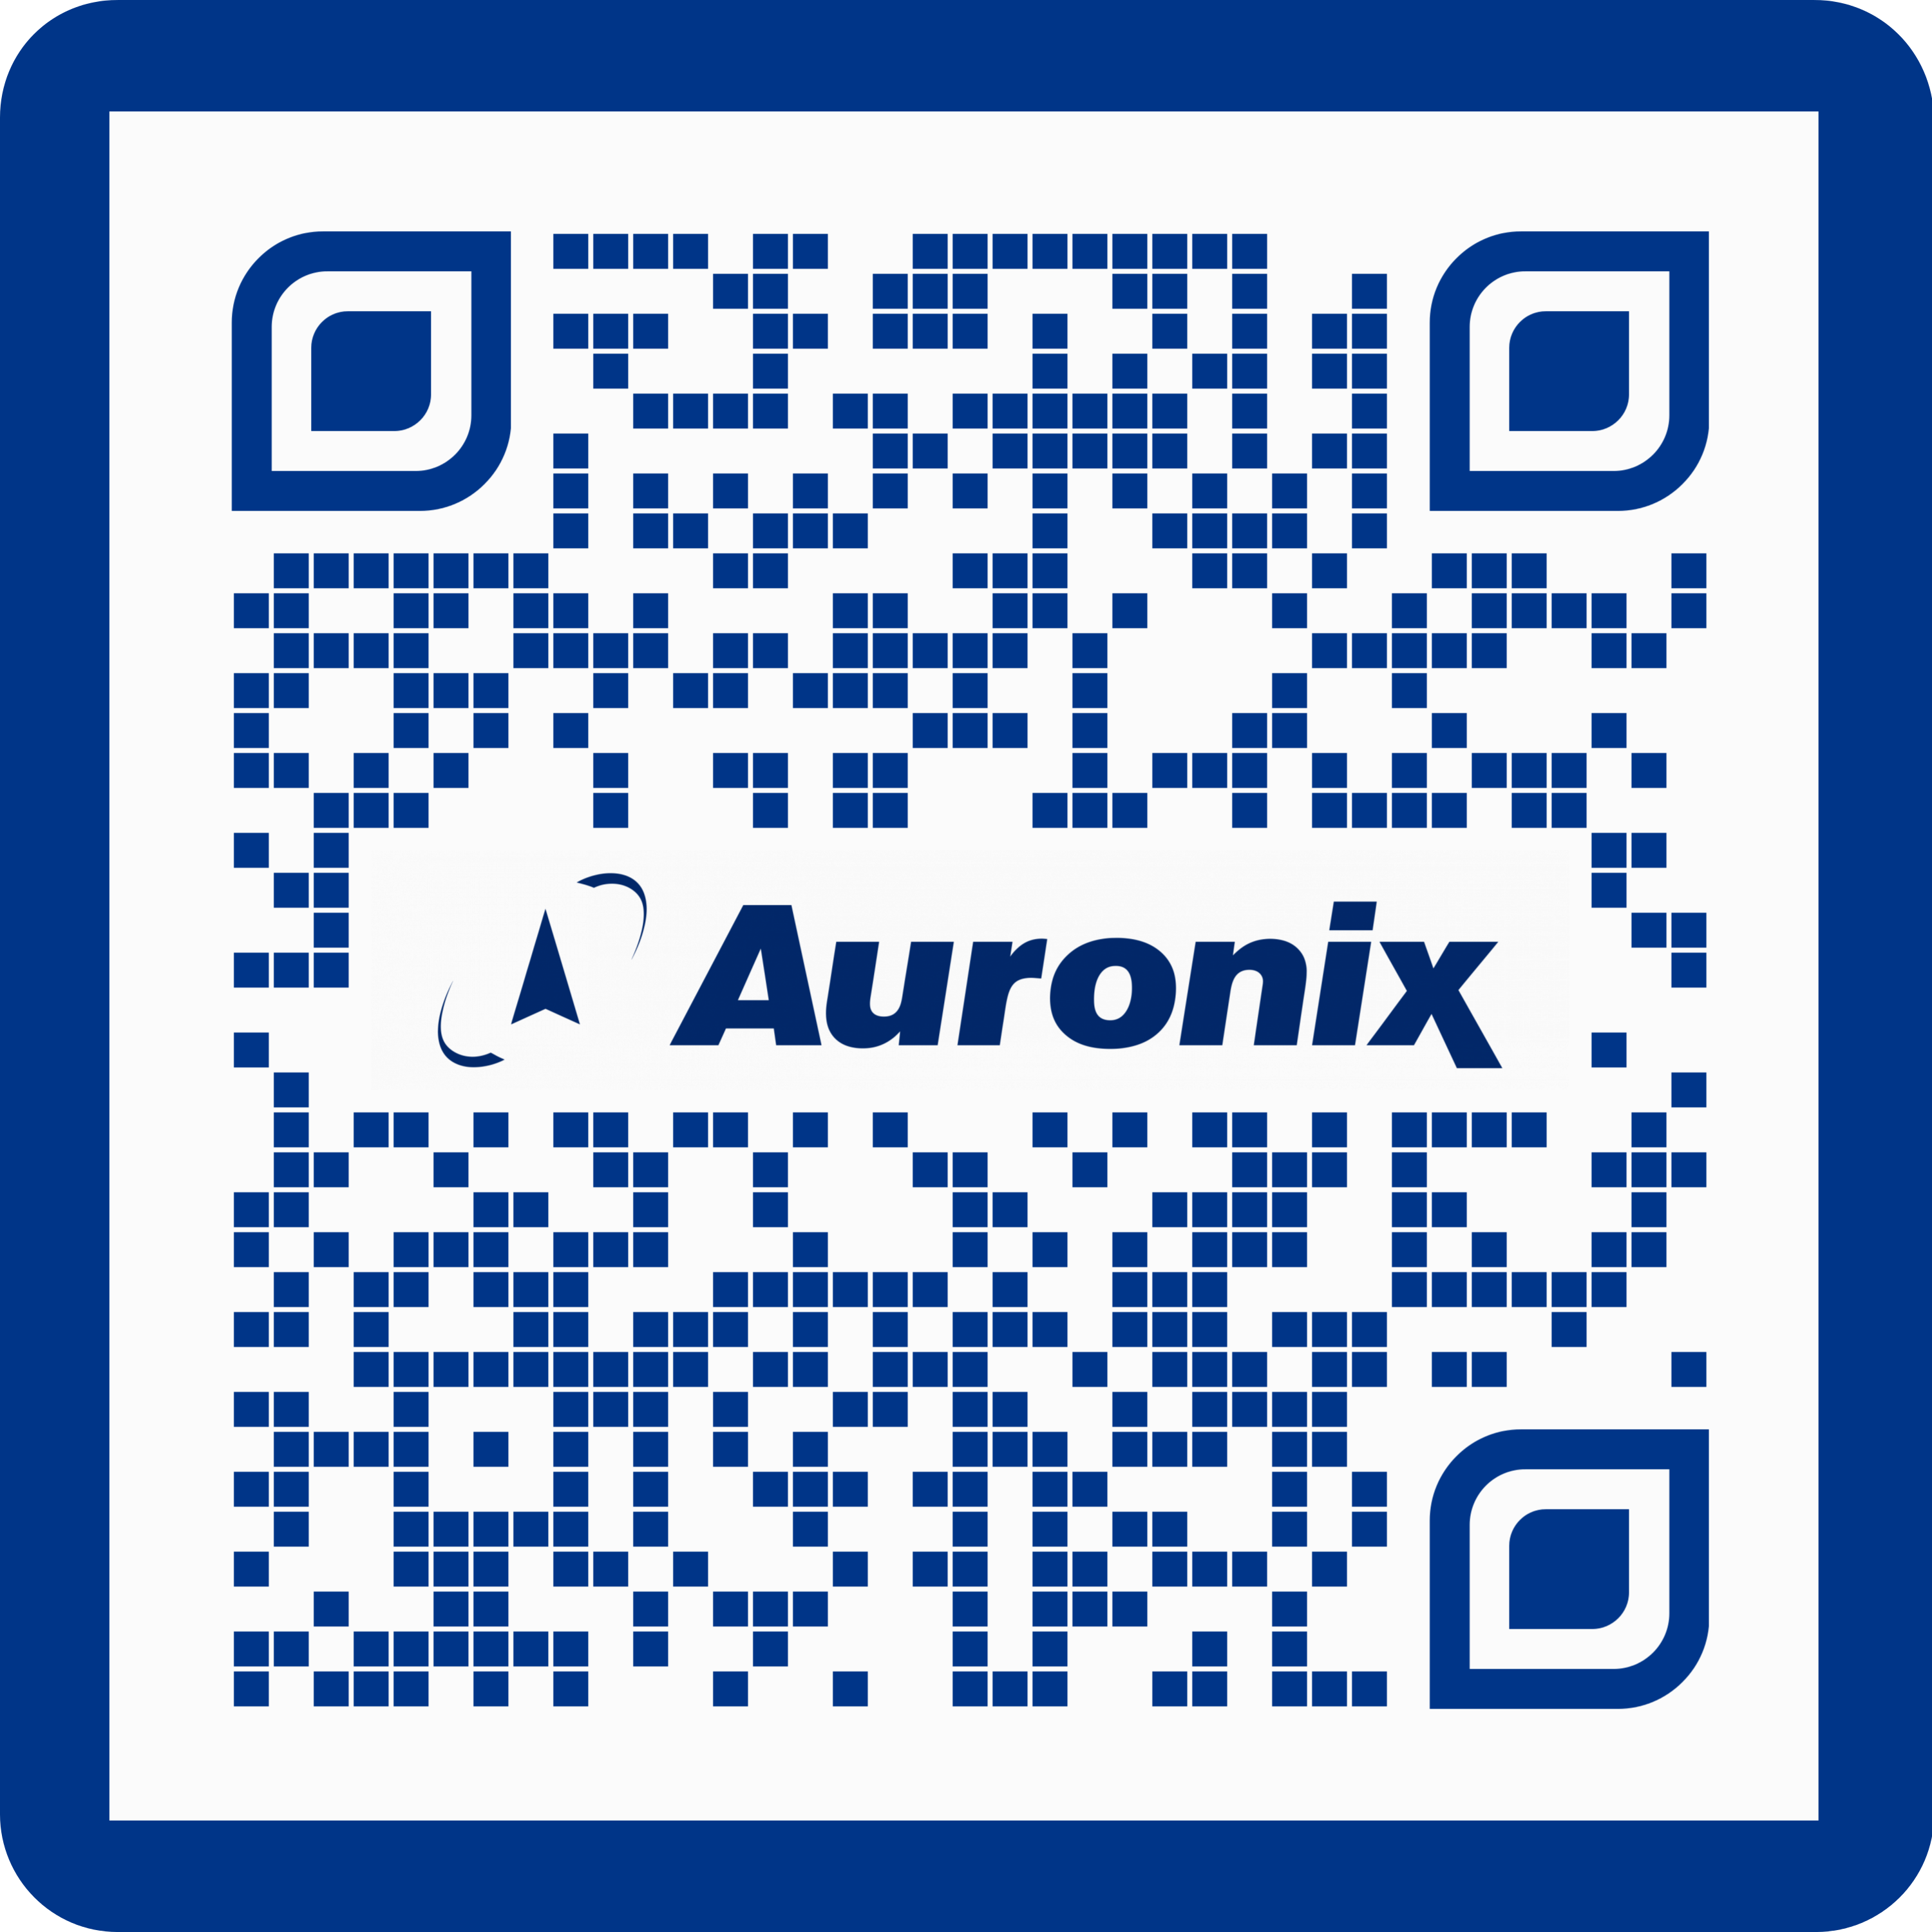 WhatsApp QR code for Auronix